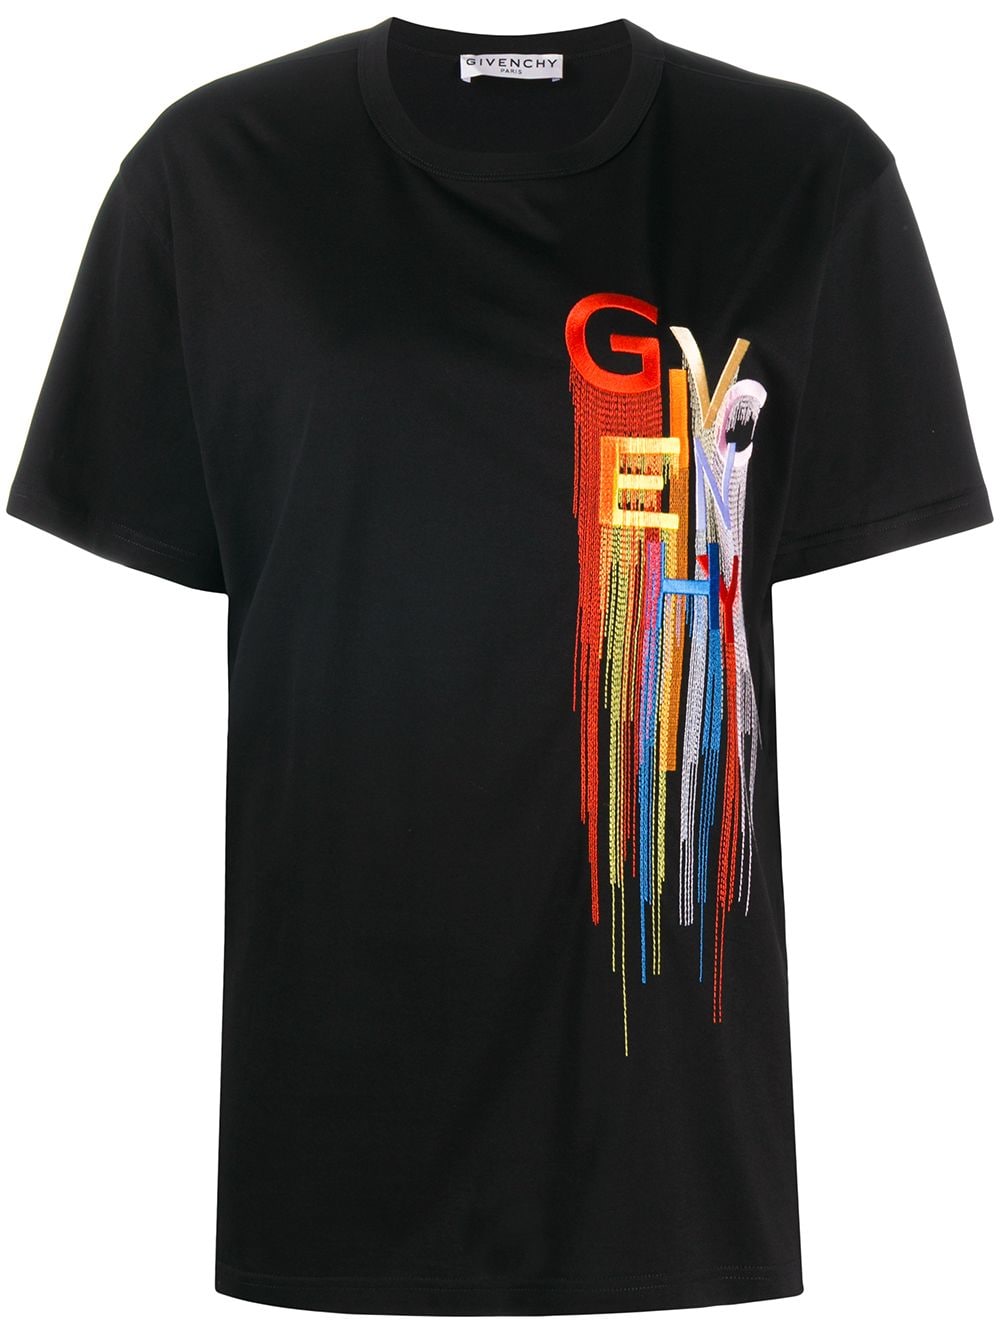 фото Givenchy футболка с вышитым логотипом